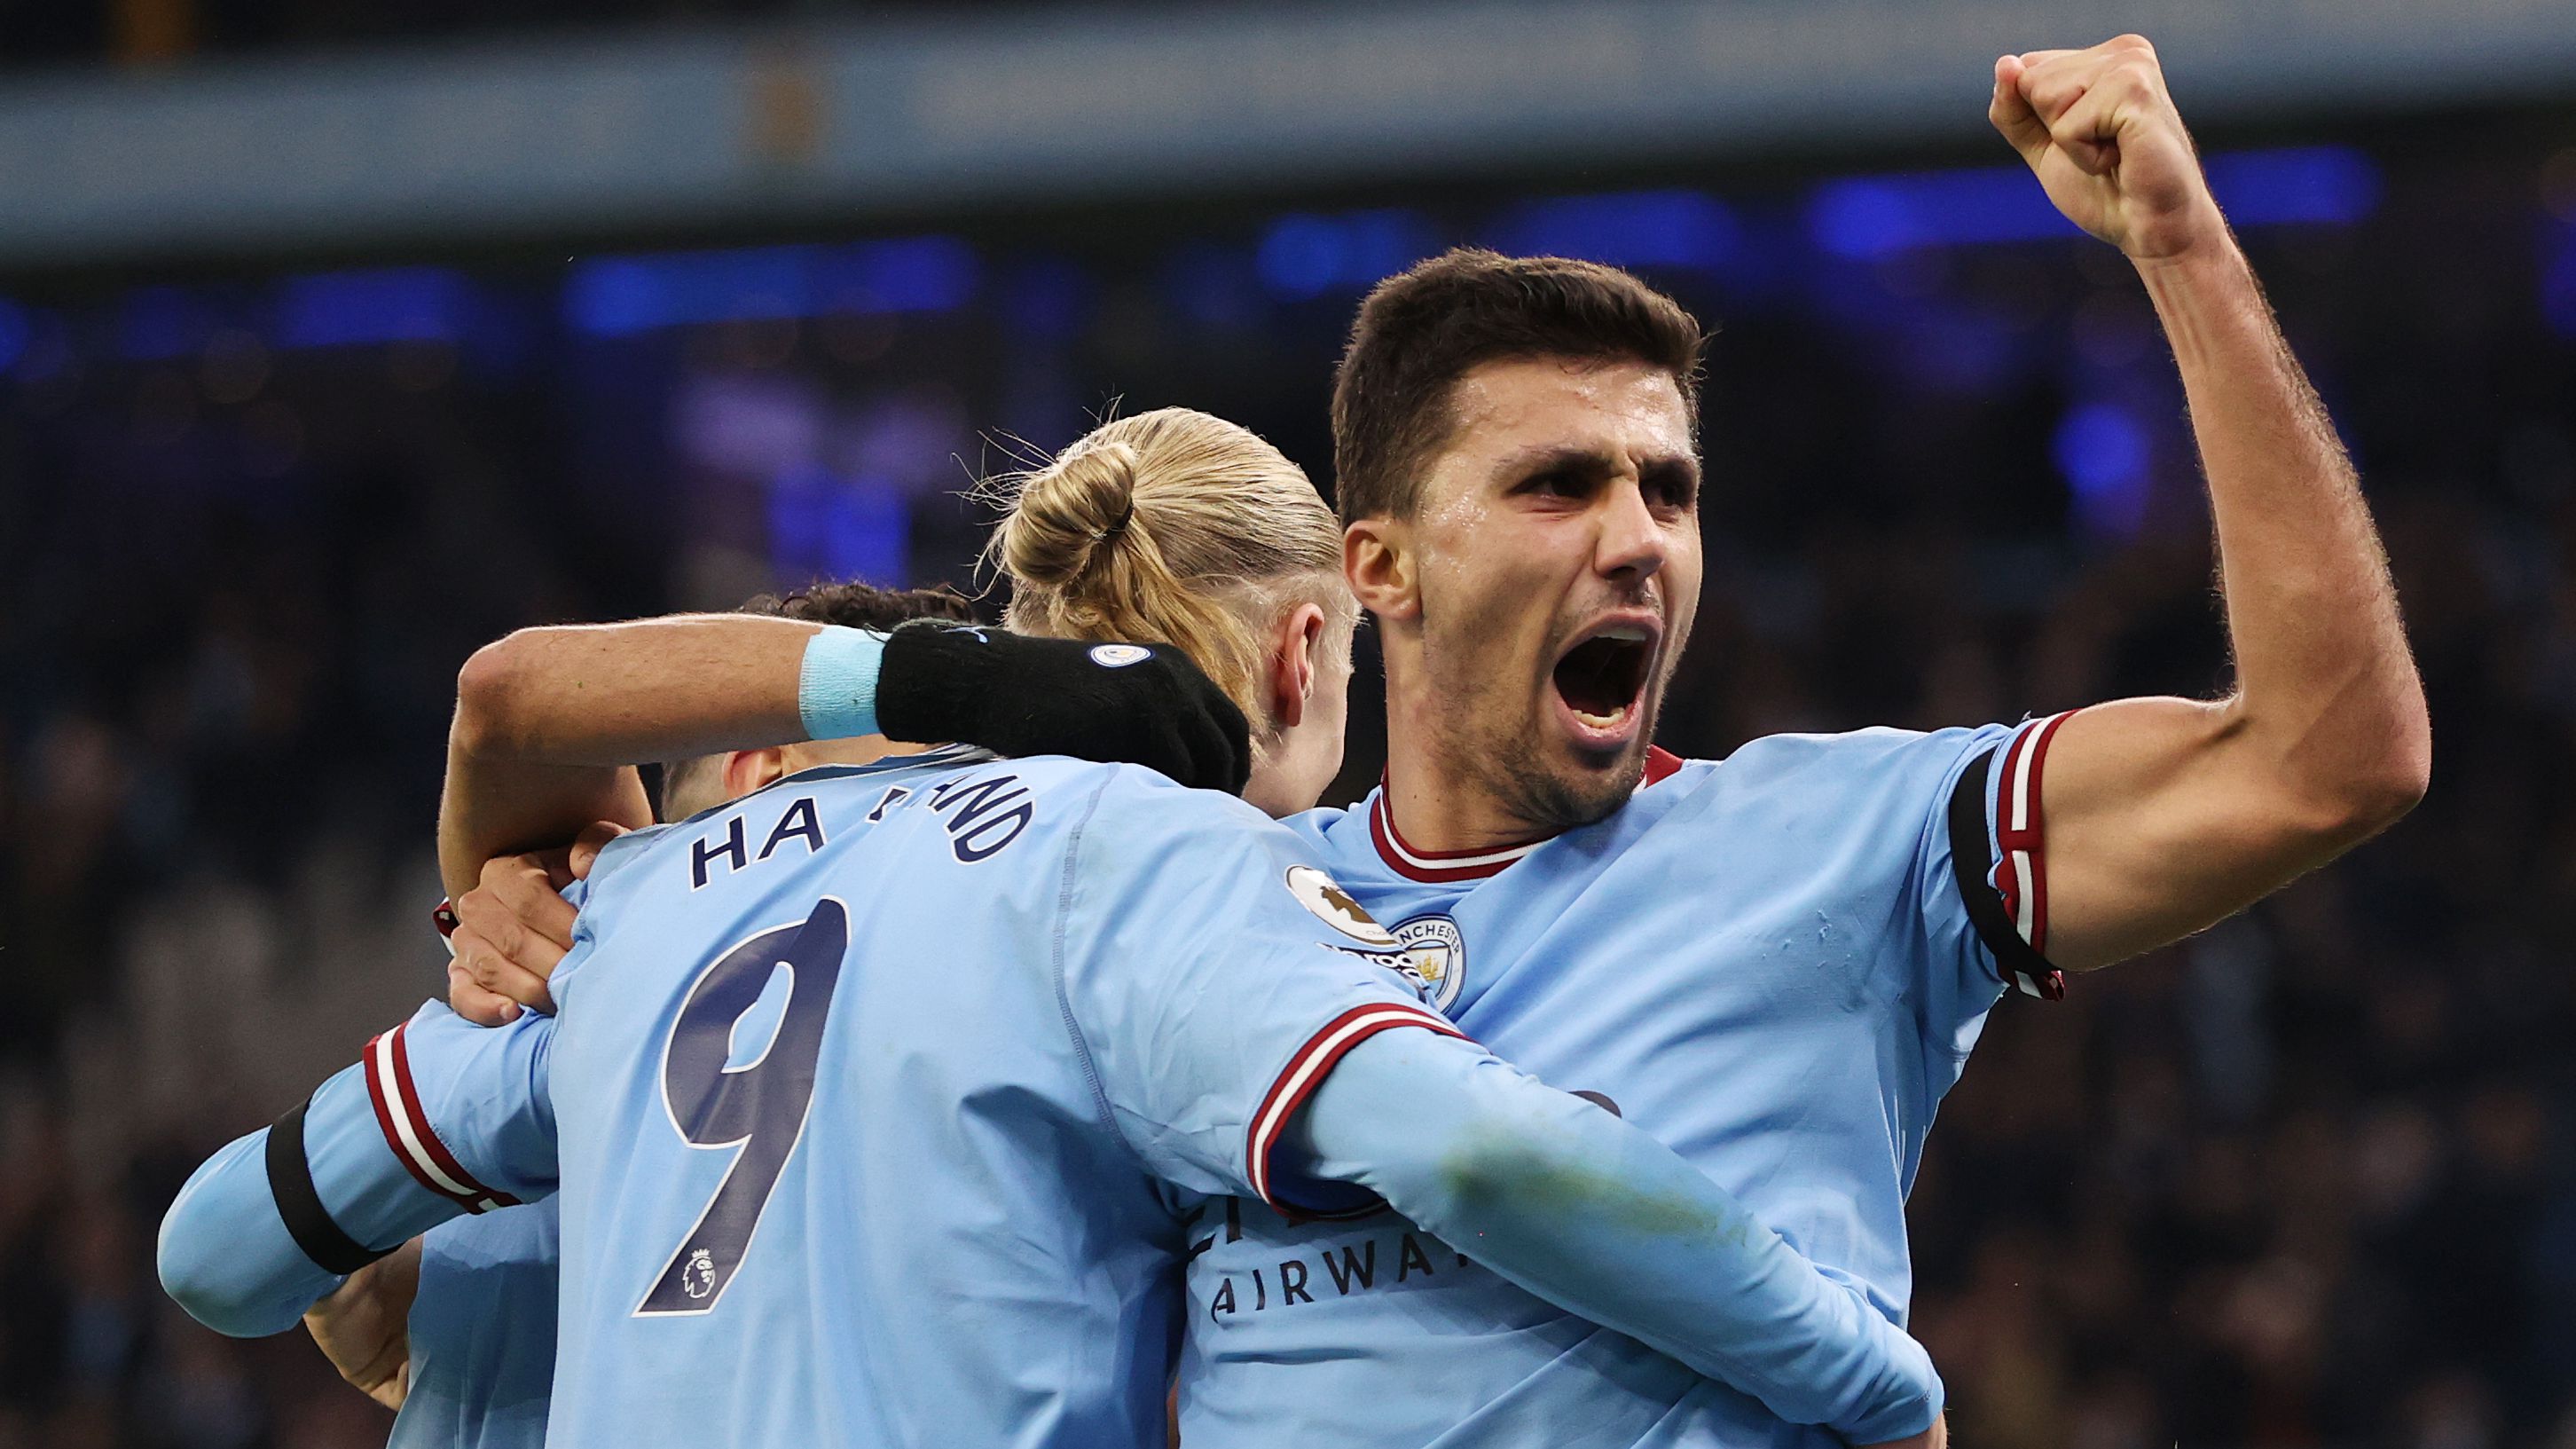 Imagens da vitória do Manchester City sobre o Aston Villa (Crédito: Getty Images)